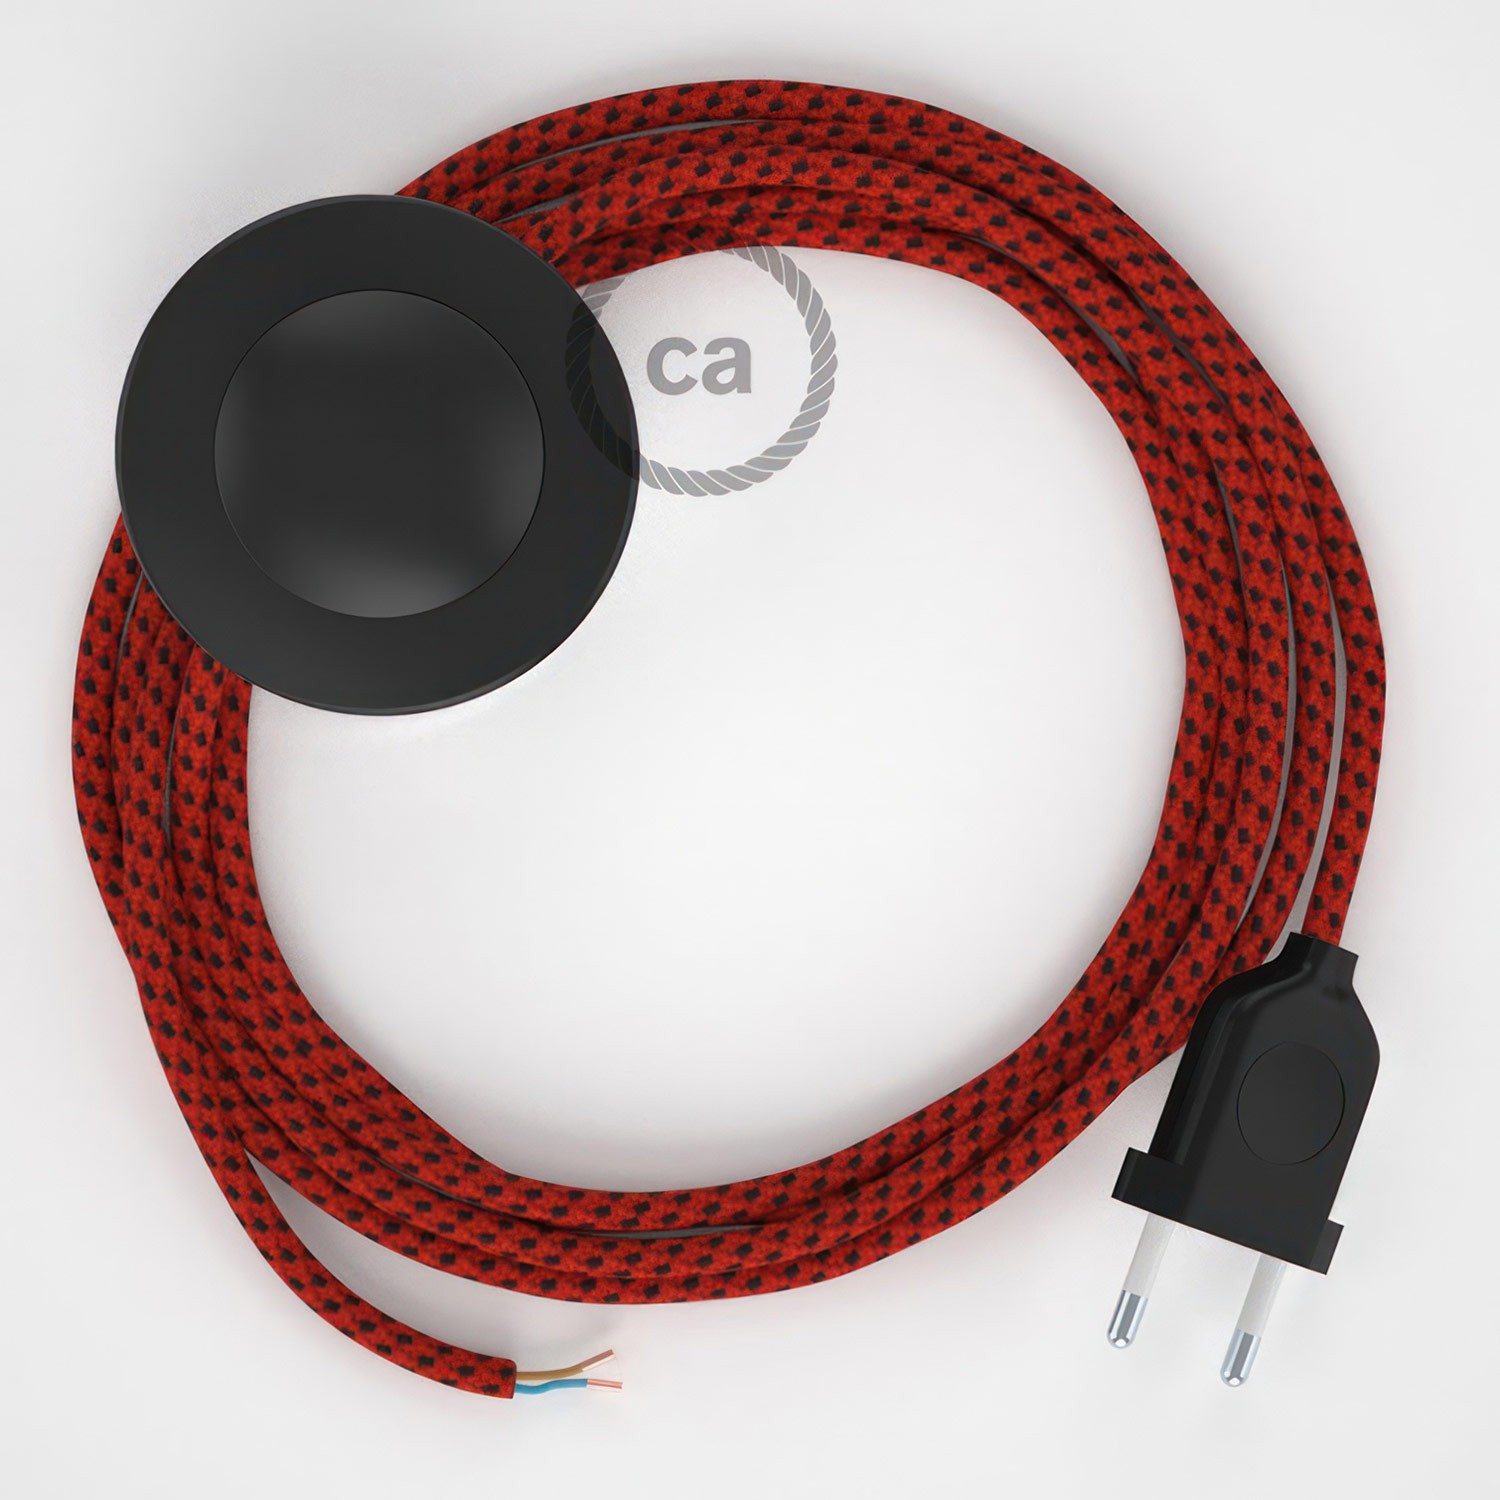 Cableado para lámpara de pie, cable RT94 Efecto Seda Red Devil 3 m. Elige tu el color de la clavija y del interruptor!